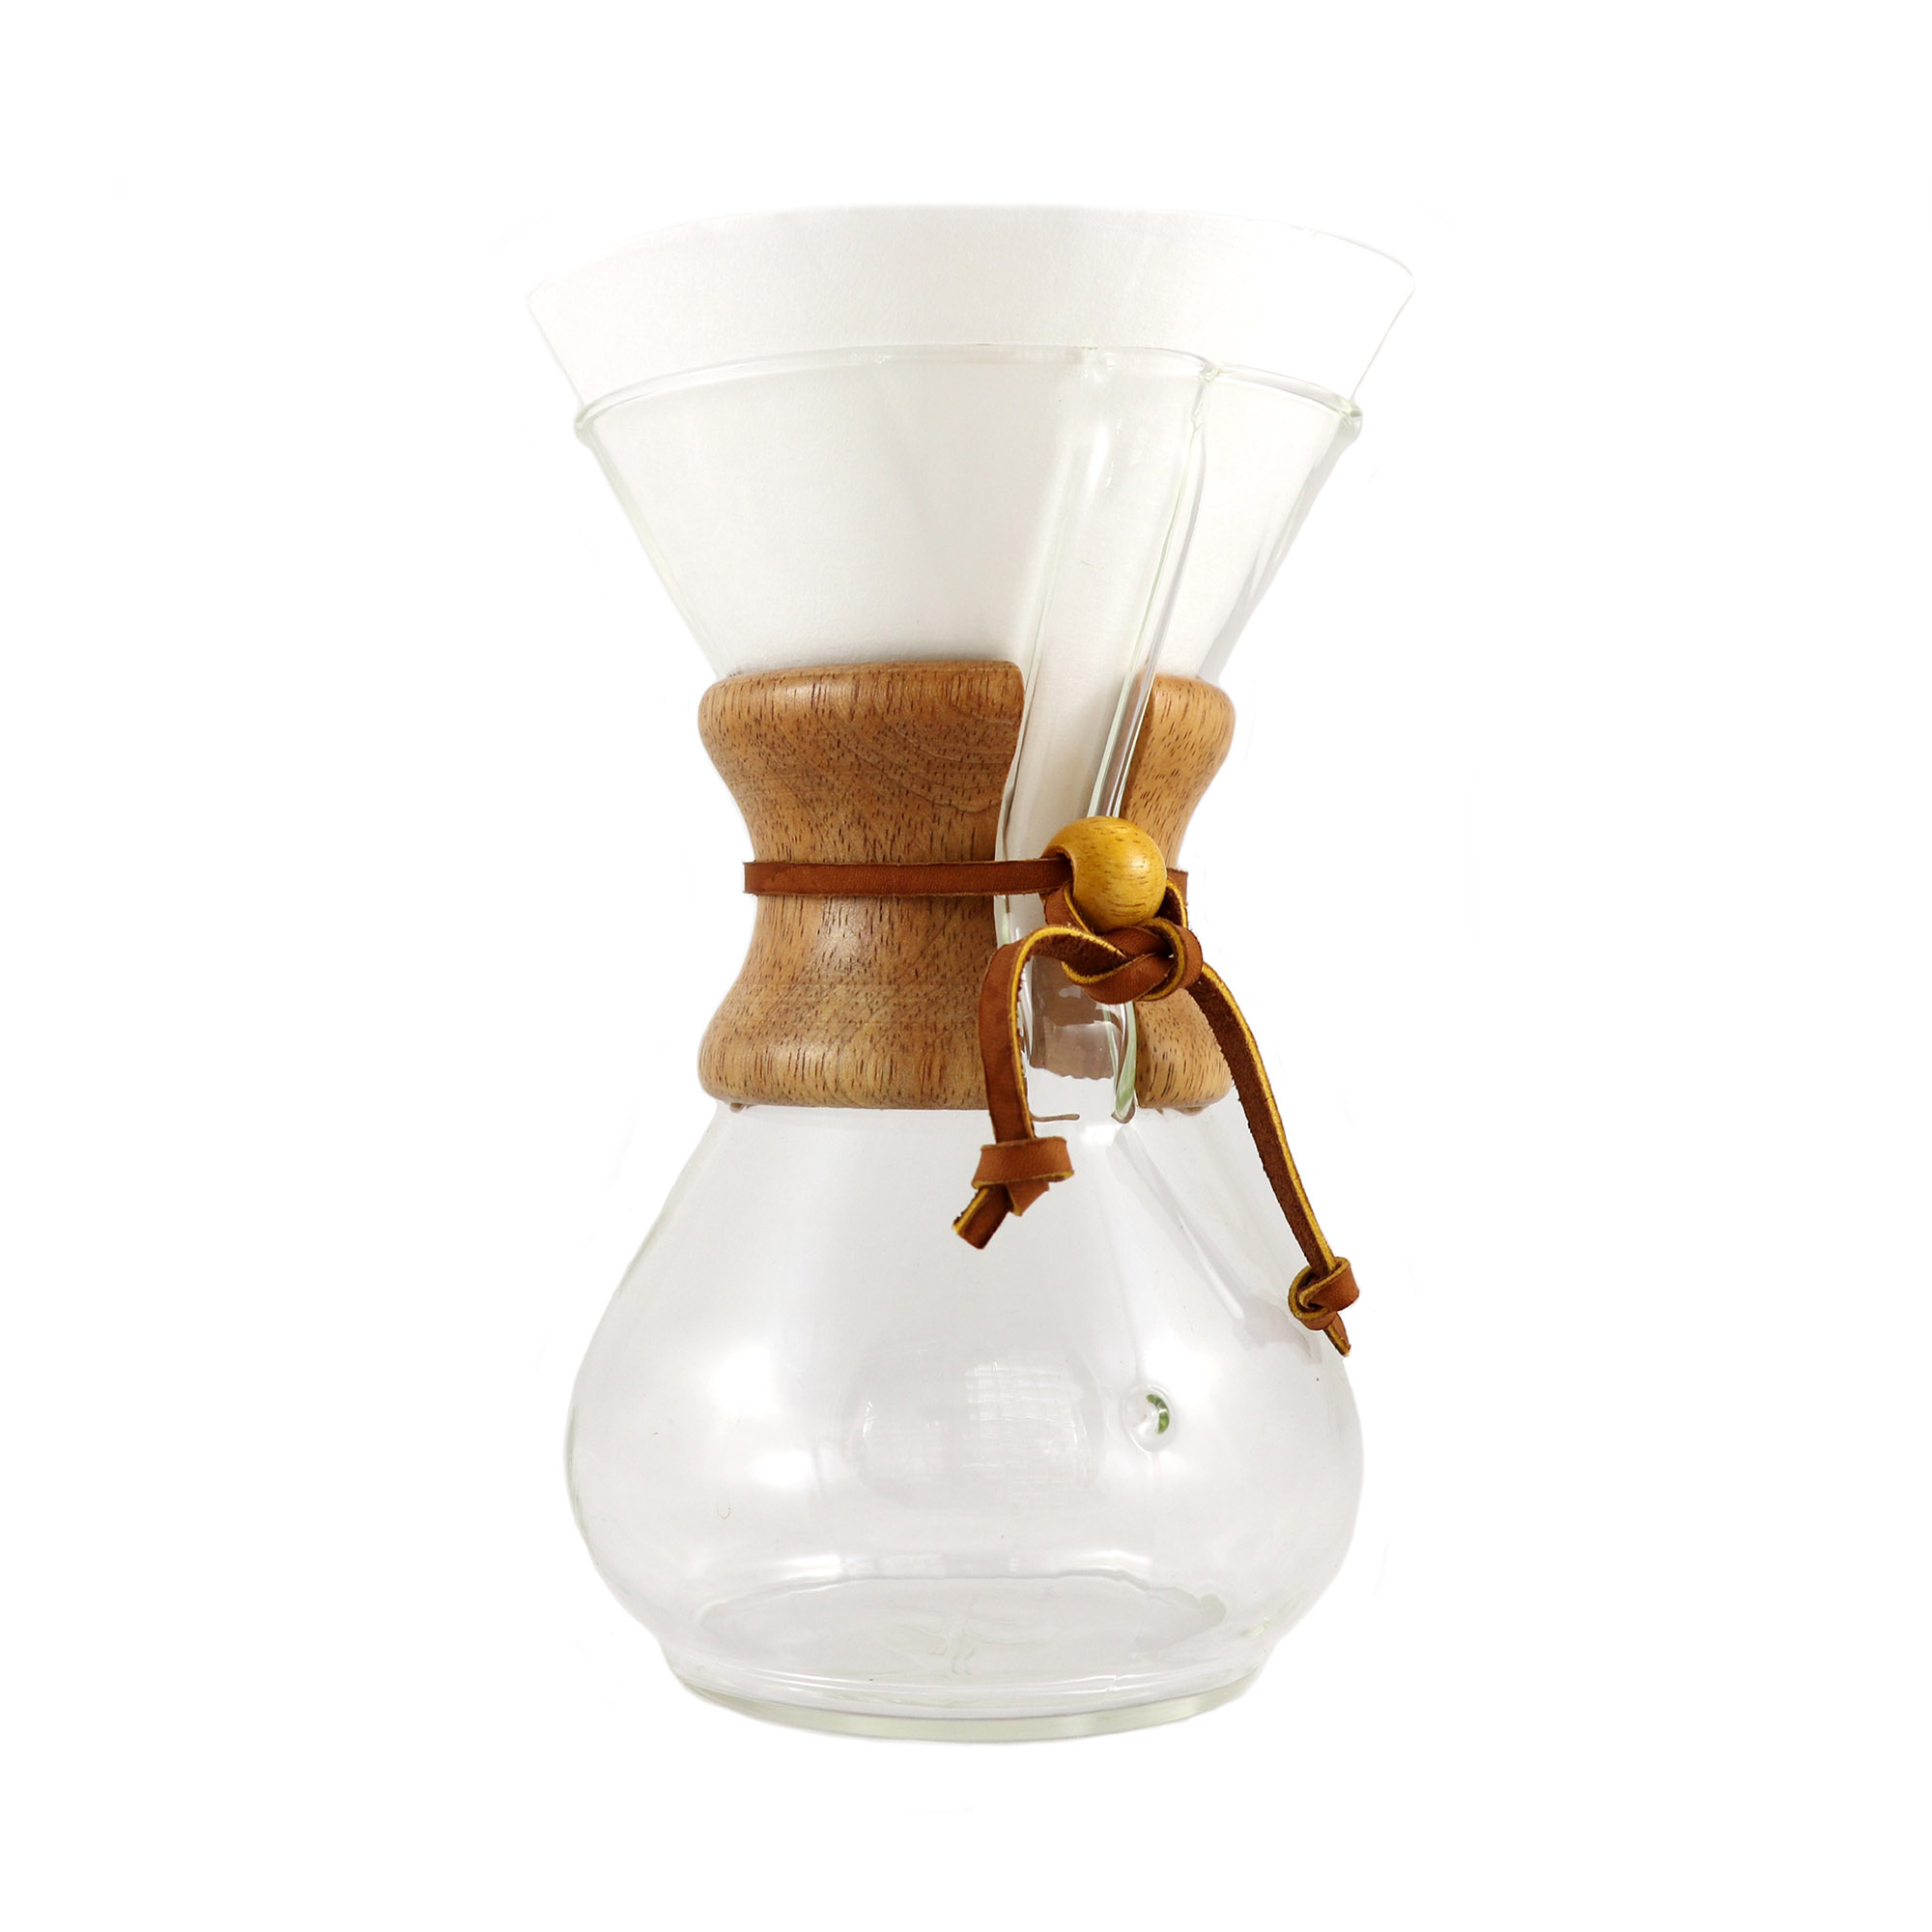 Hario Kaffee Set Kaffekanne aus Glas mit passendem Kaffefilter aus Porzellan und Filterpapier